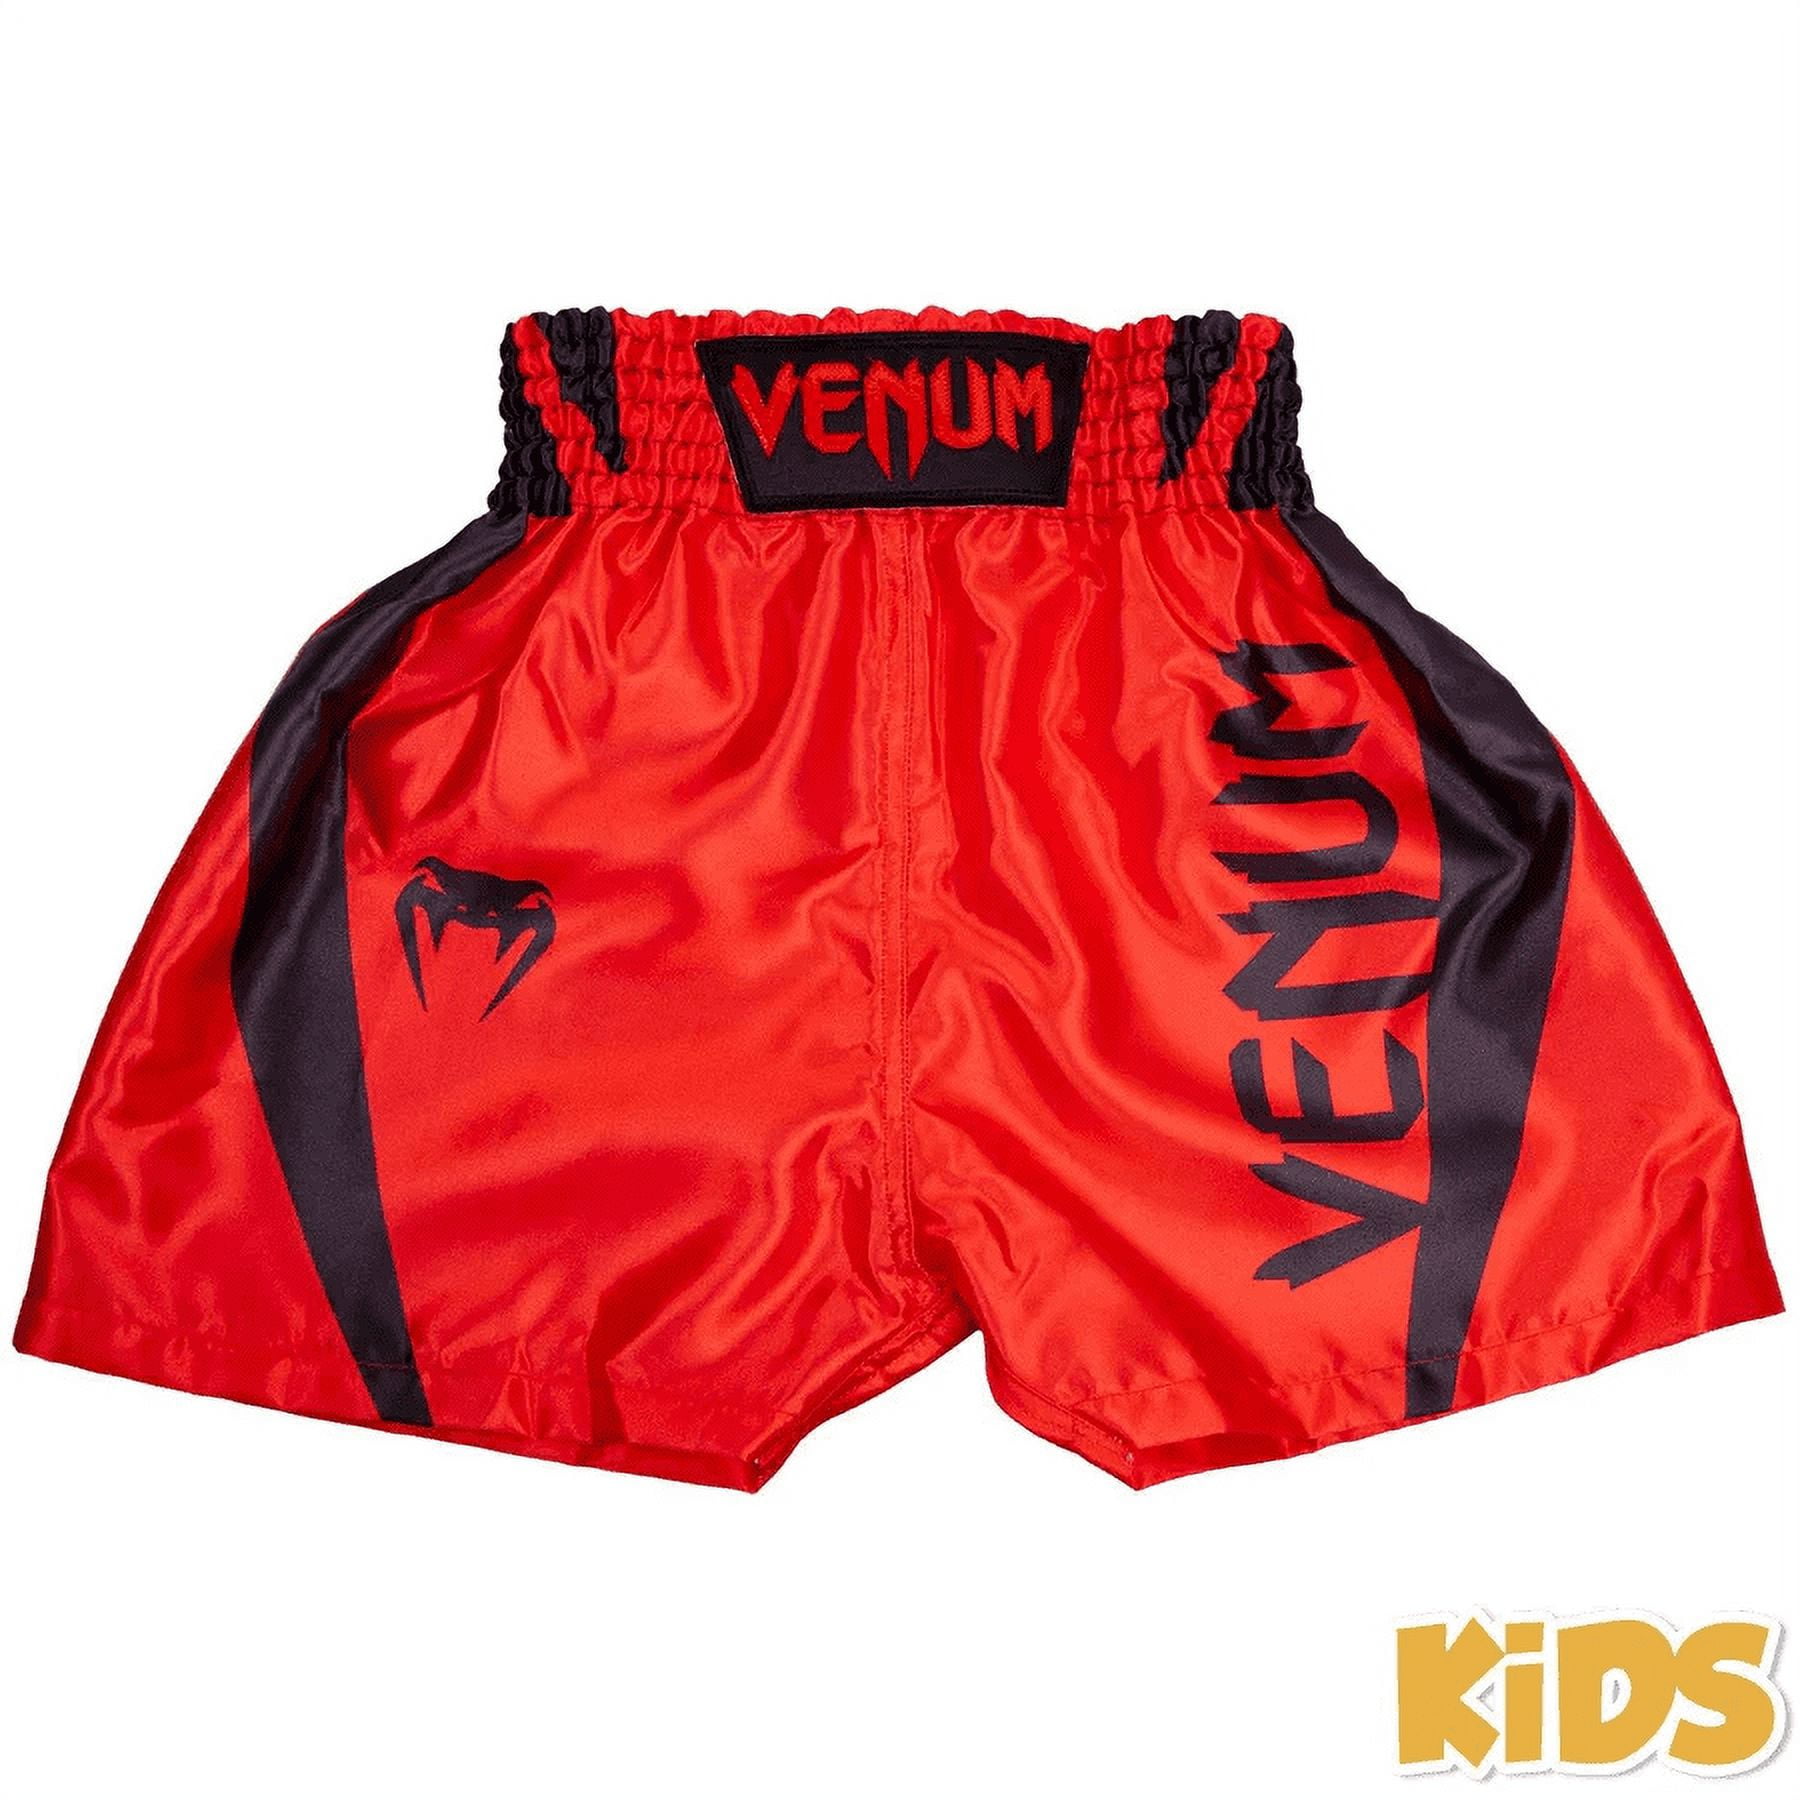 Short de boxe Enfant Venum Elite Kids - Noir/Blanc